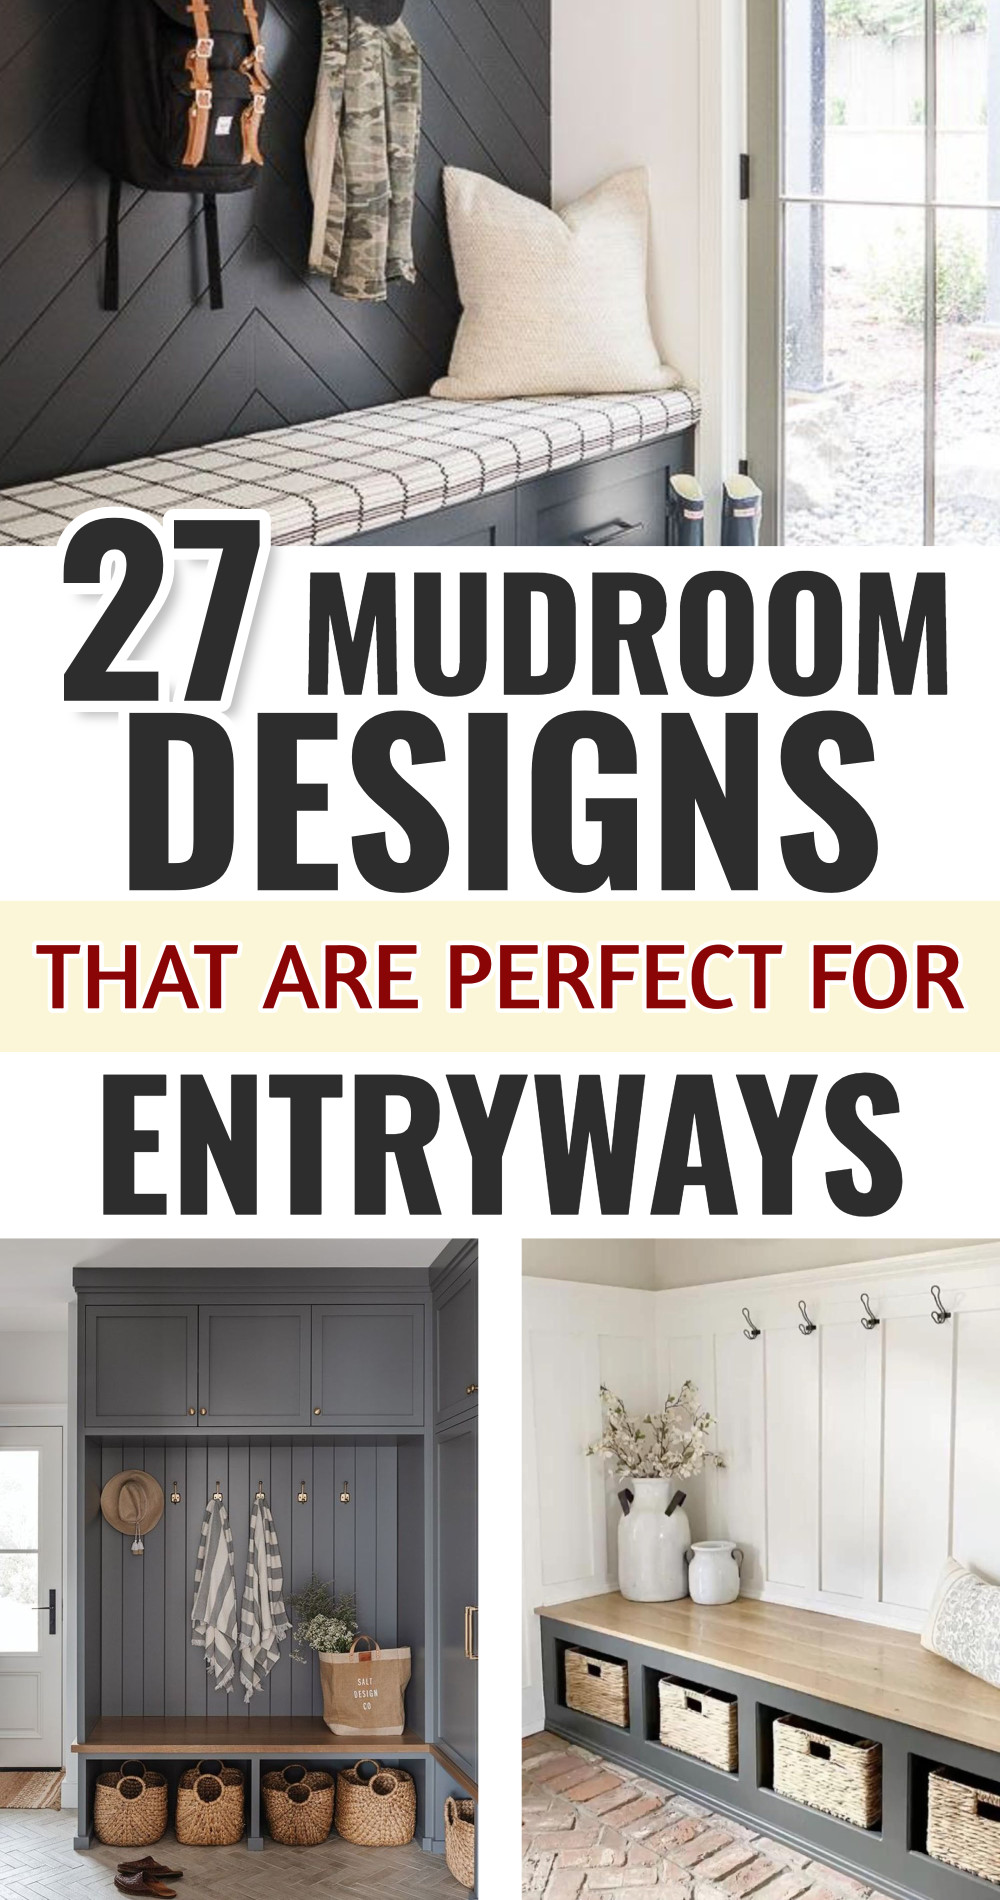 27 mudroom designs perfect for entryways